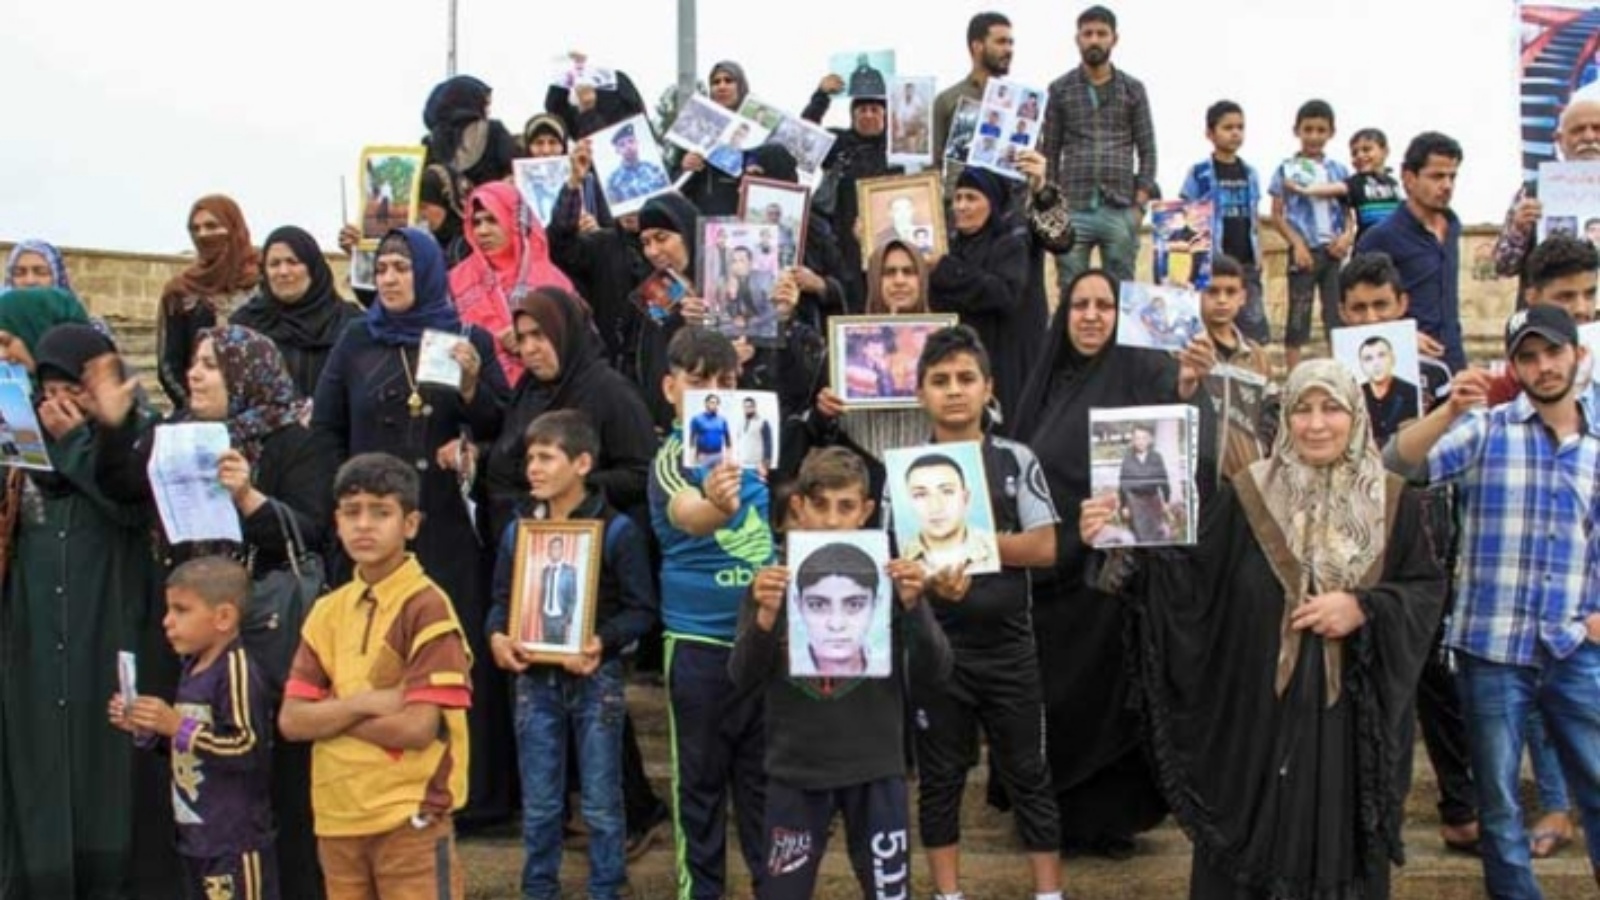 عائلات عراقية في تظاهرة تطالب بمعرفة مصير ابناءها المغيبين قسريا (فيسبوك)